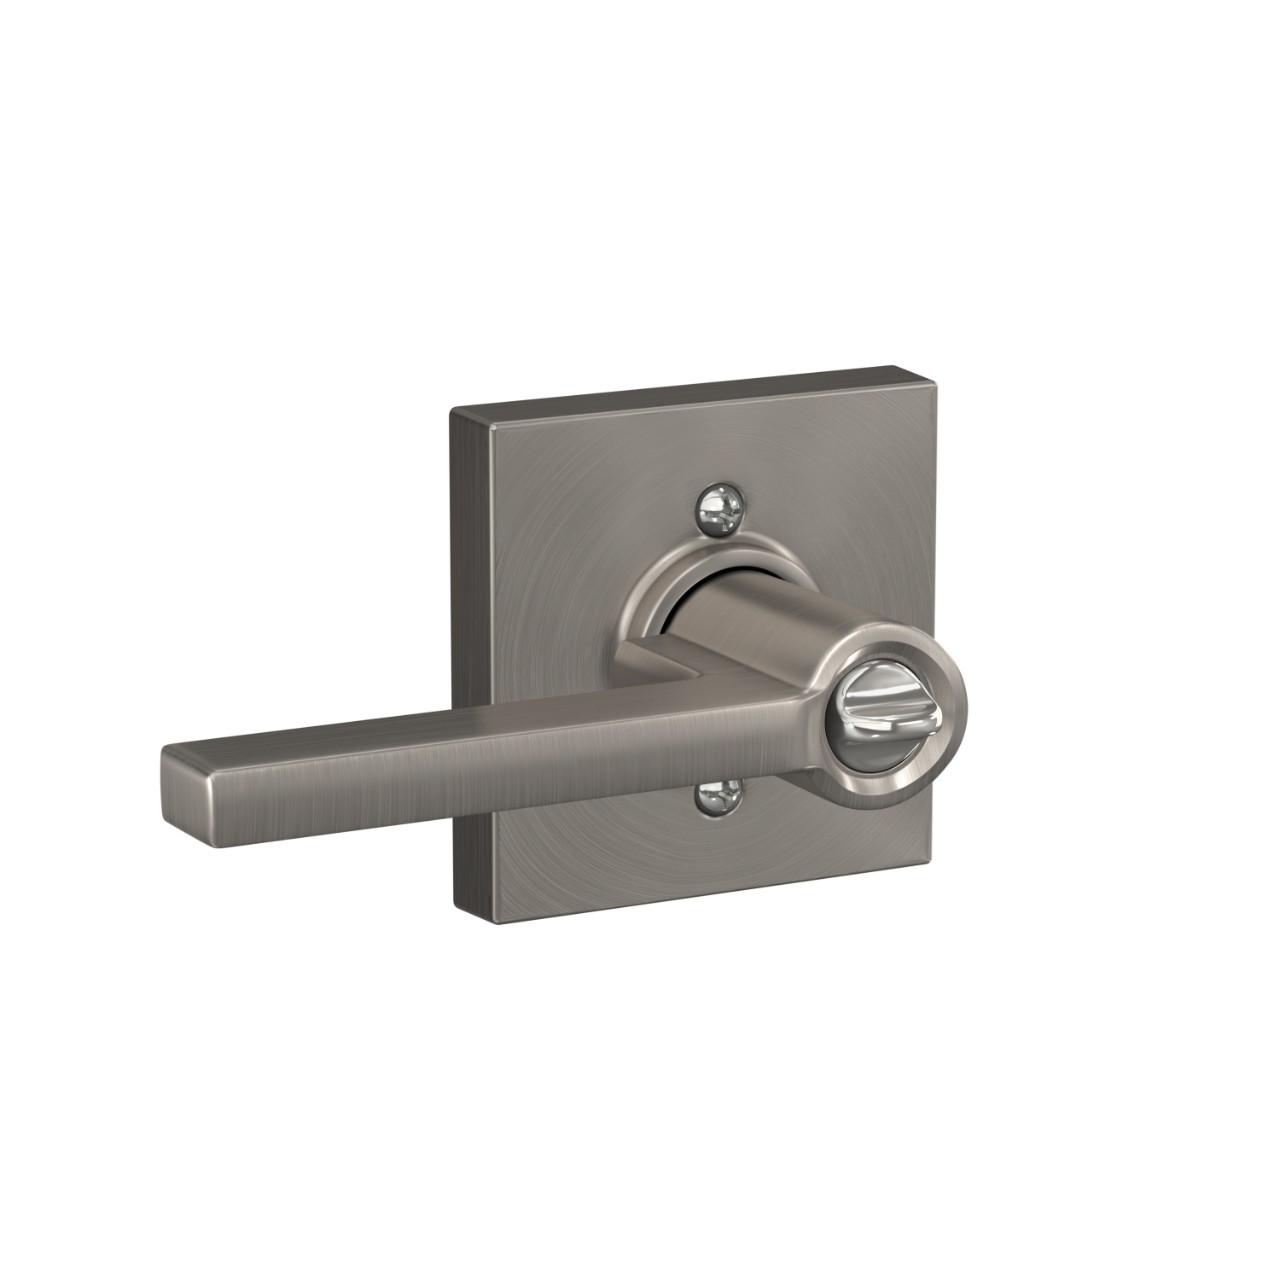 Latitude lever Keyed Entry lock